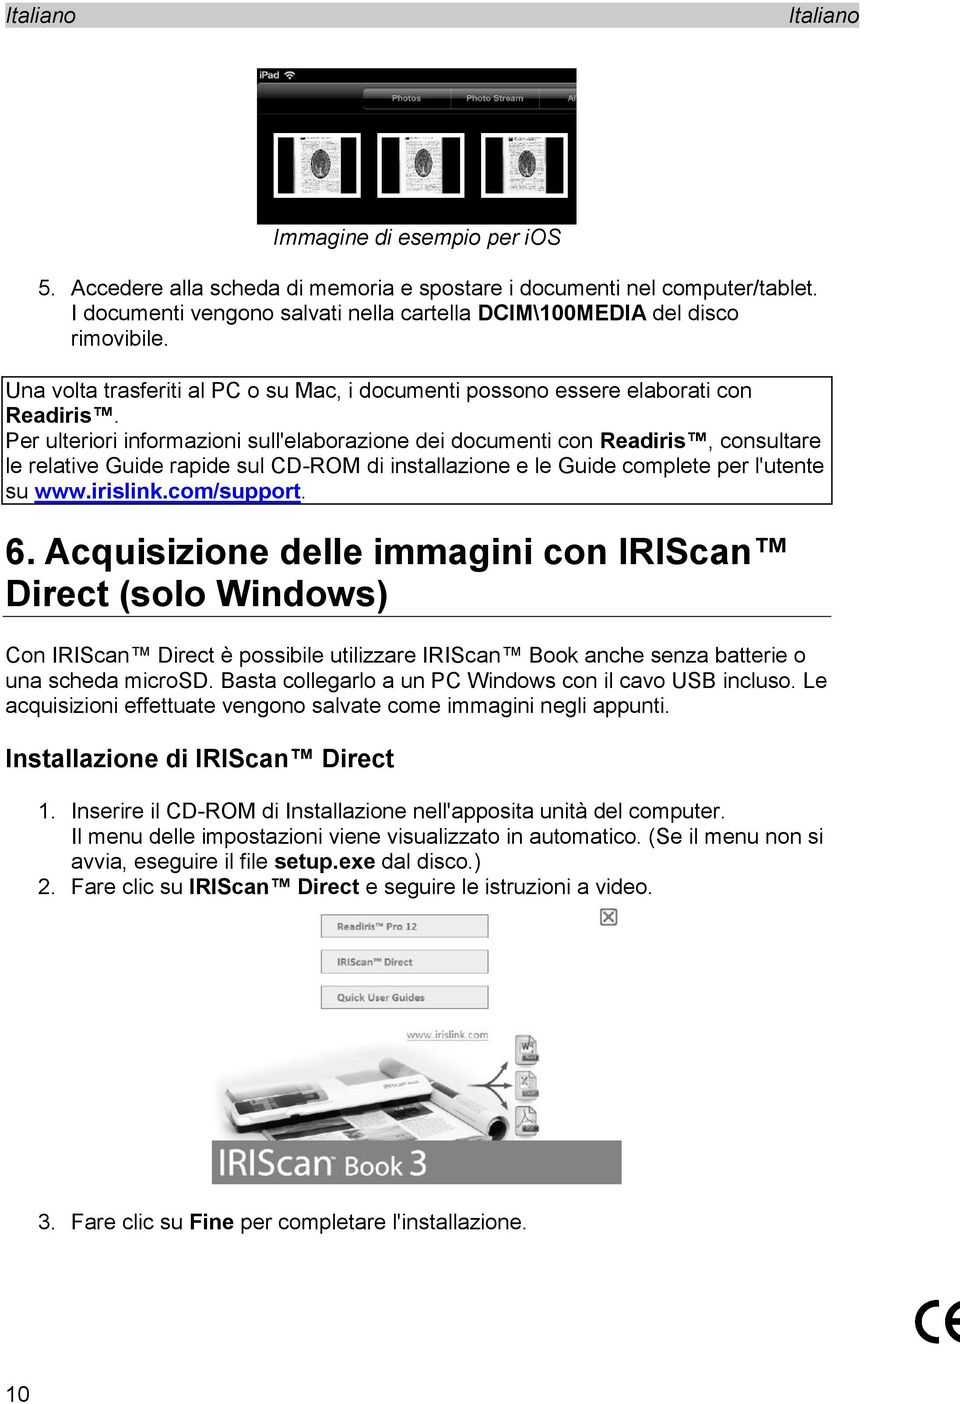 Per ulteriori informazioni sull'elaborazione dei documenti con Readiris, consultare le relative Guide rapide sul CD-ROM di installazione e le Guide complete per l'utente su www.irislink.com/support.